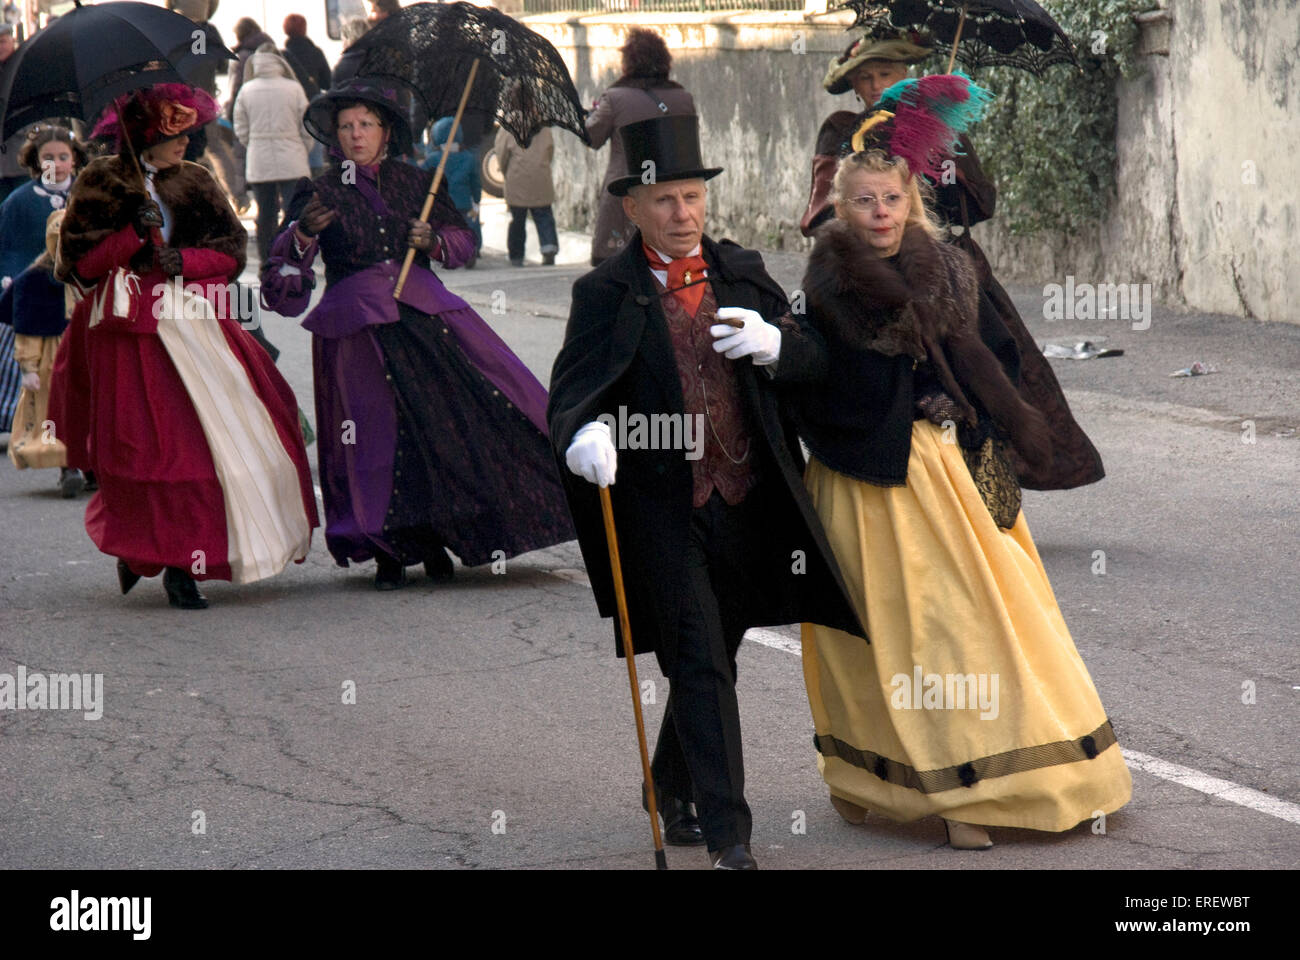 La gente en la época victoriana en trajes tomando parte en un desfile del Día de San Valentín en la aldea de Roquemaure, en el sur de Francia. Foto de stock